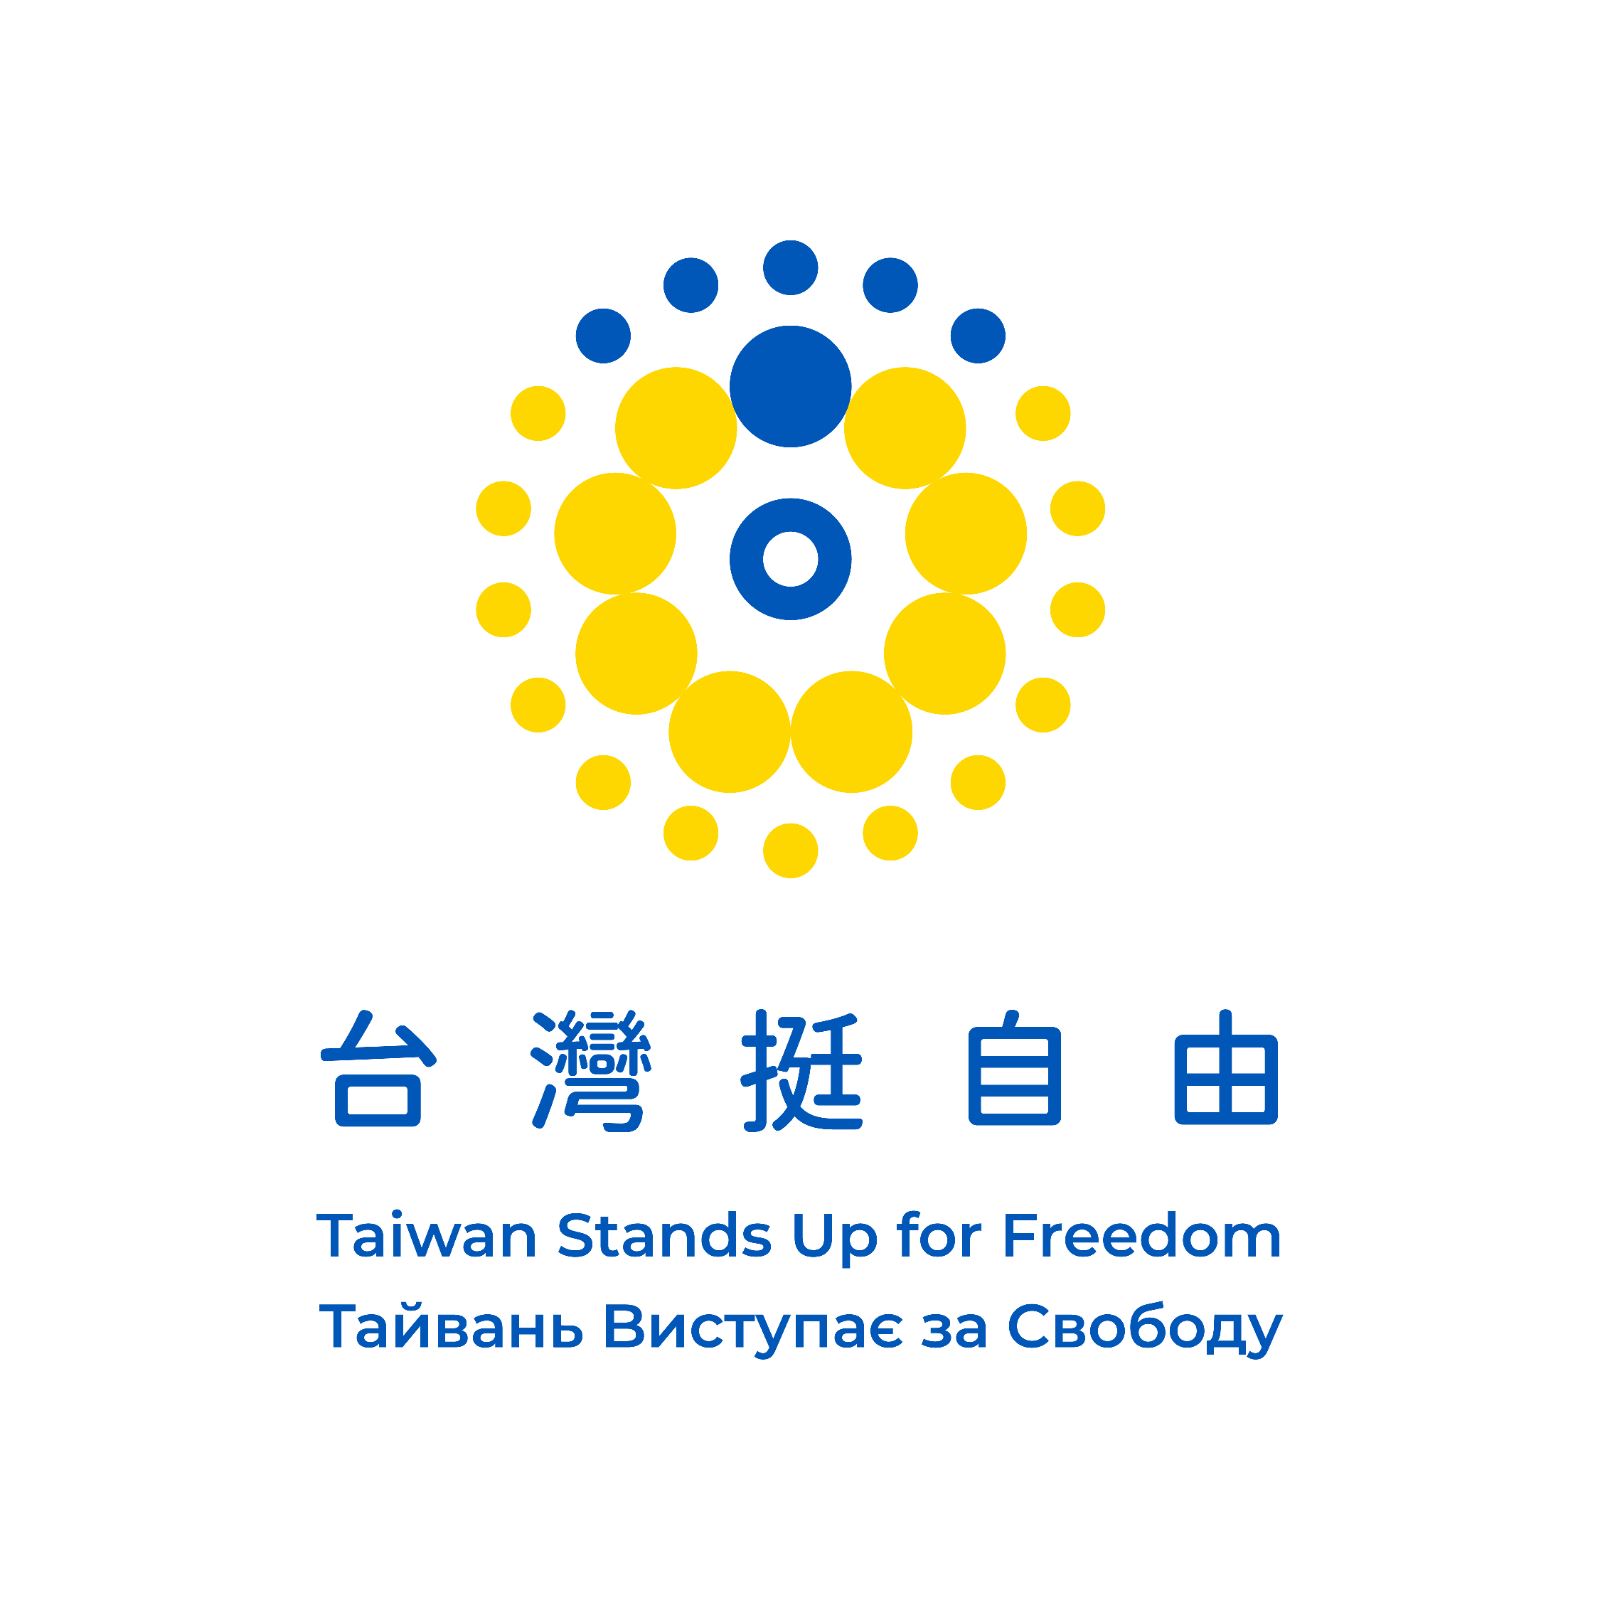 「台灣挺自由」識別設計及中英烏文標語。